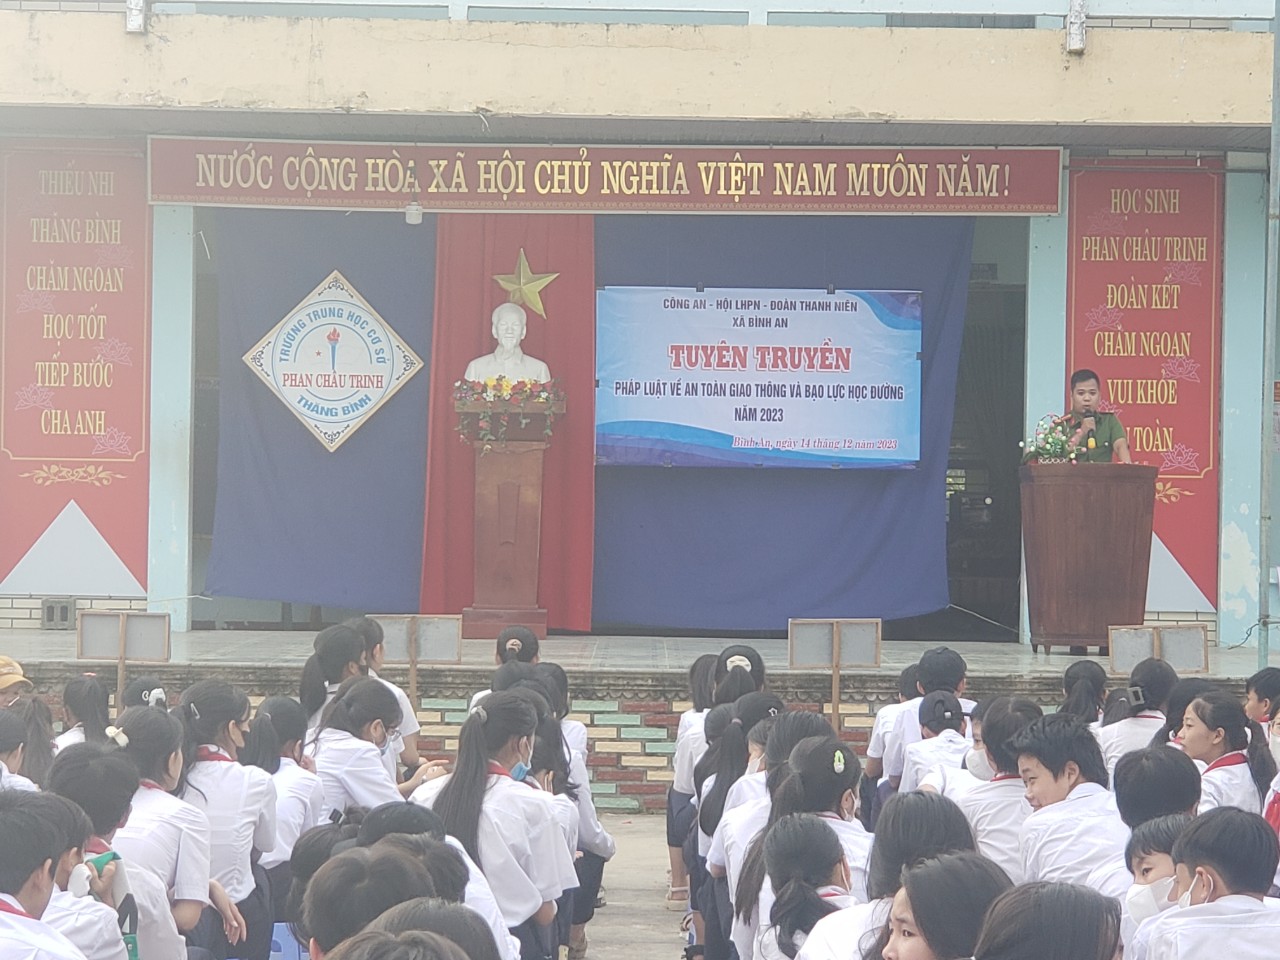 Đồng chí Trần Minh Hưng - Công an viên xã phổ biến nội dung tuyên truyền